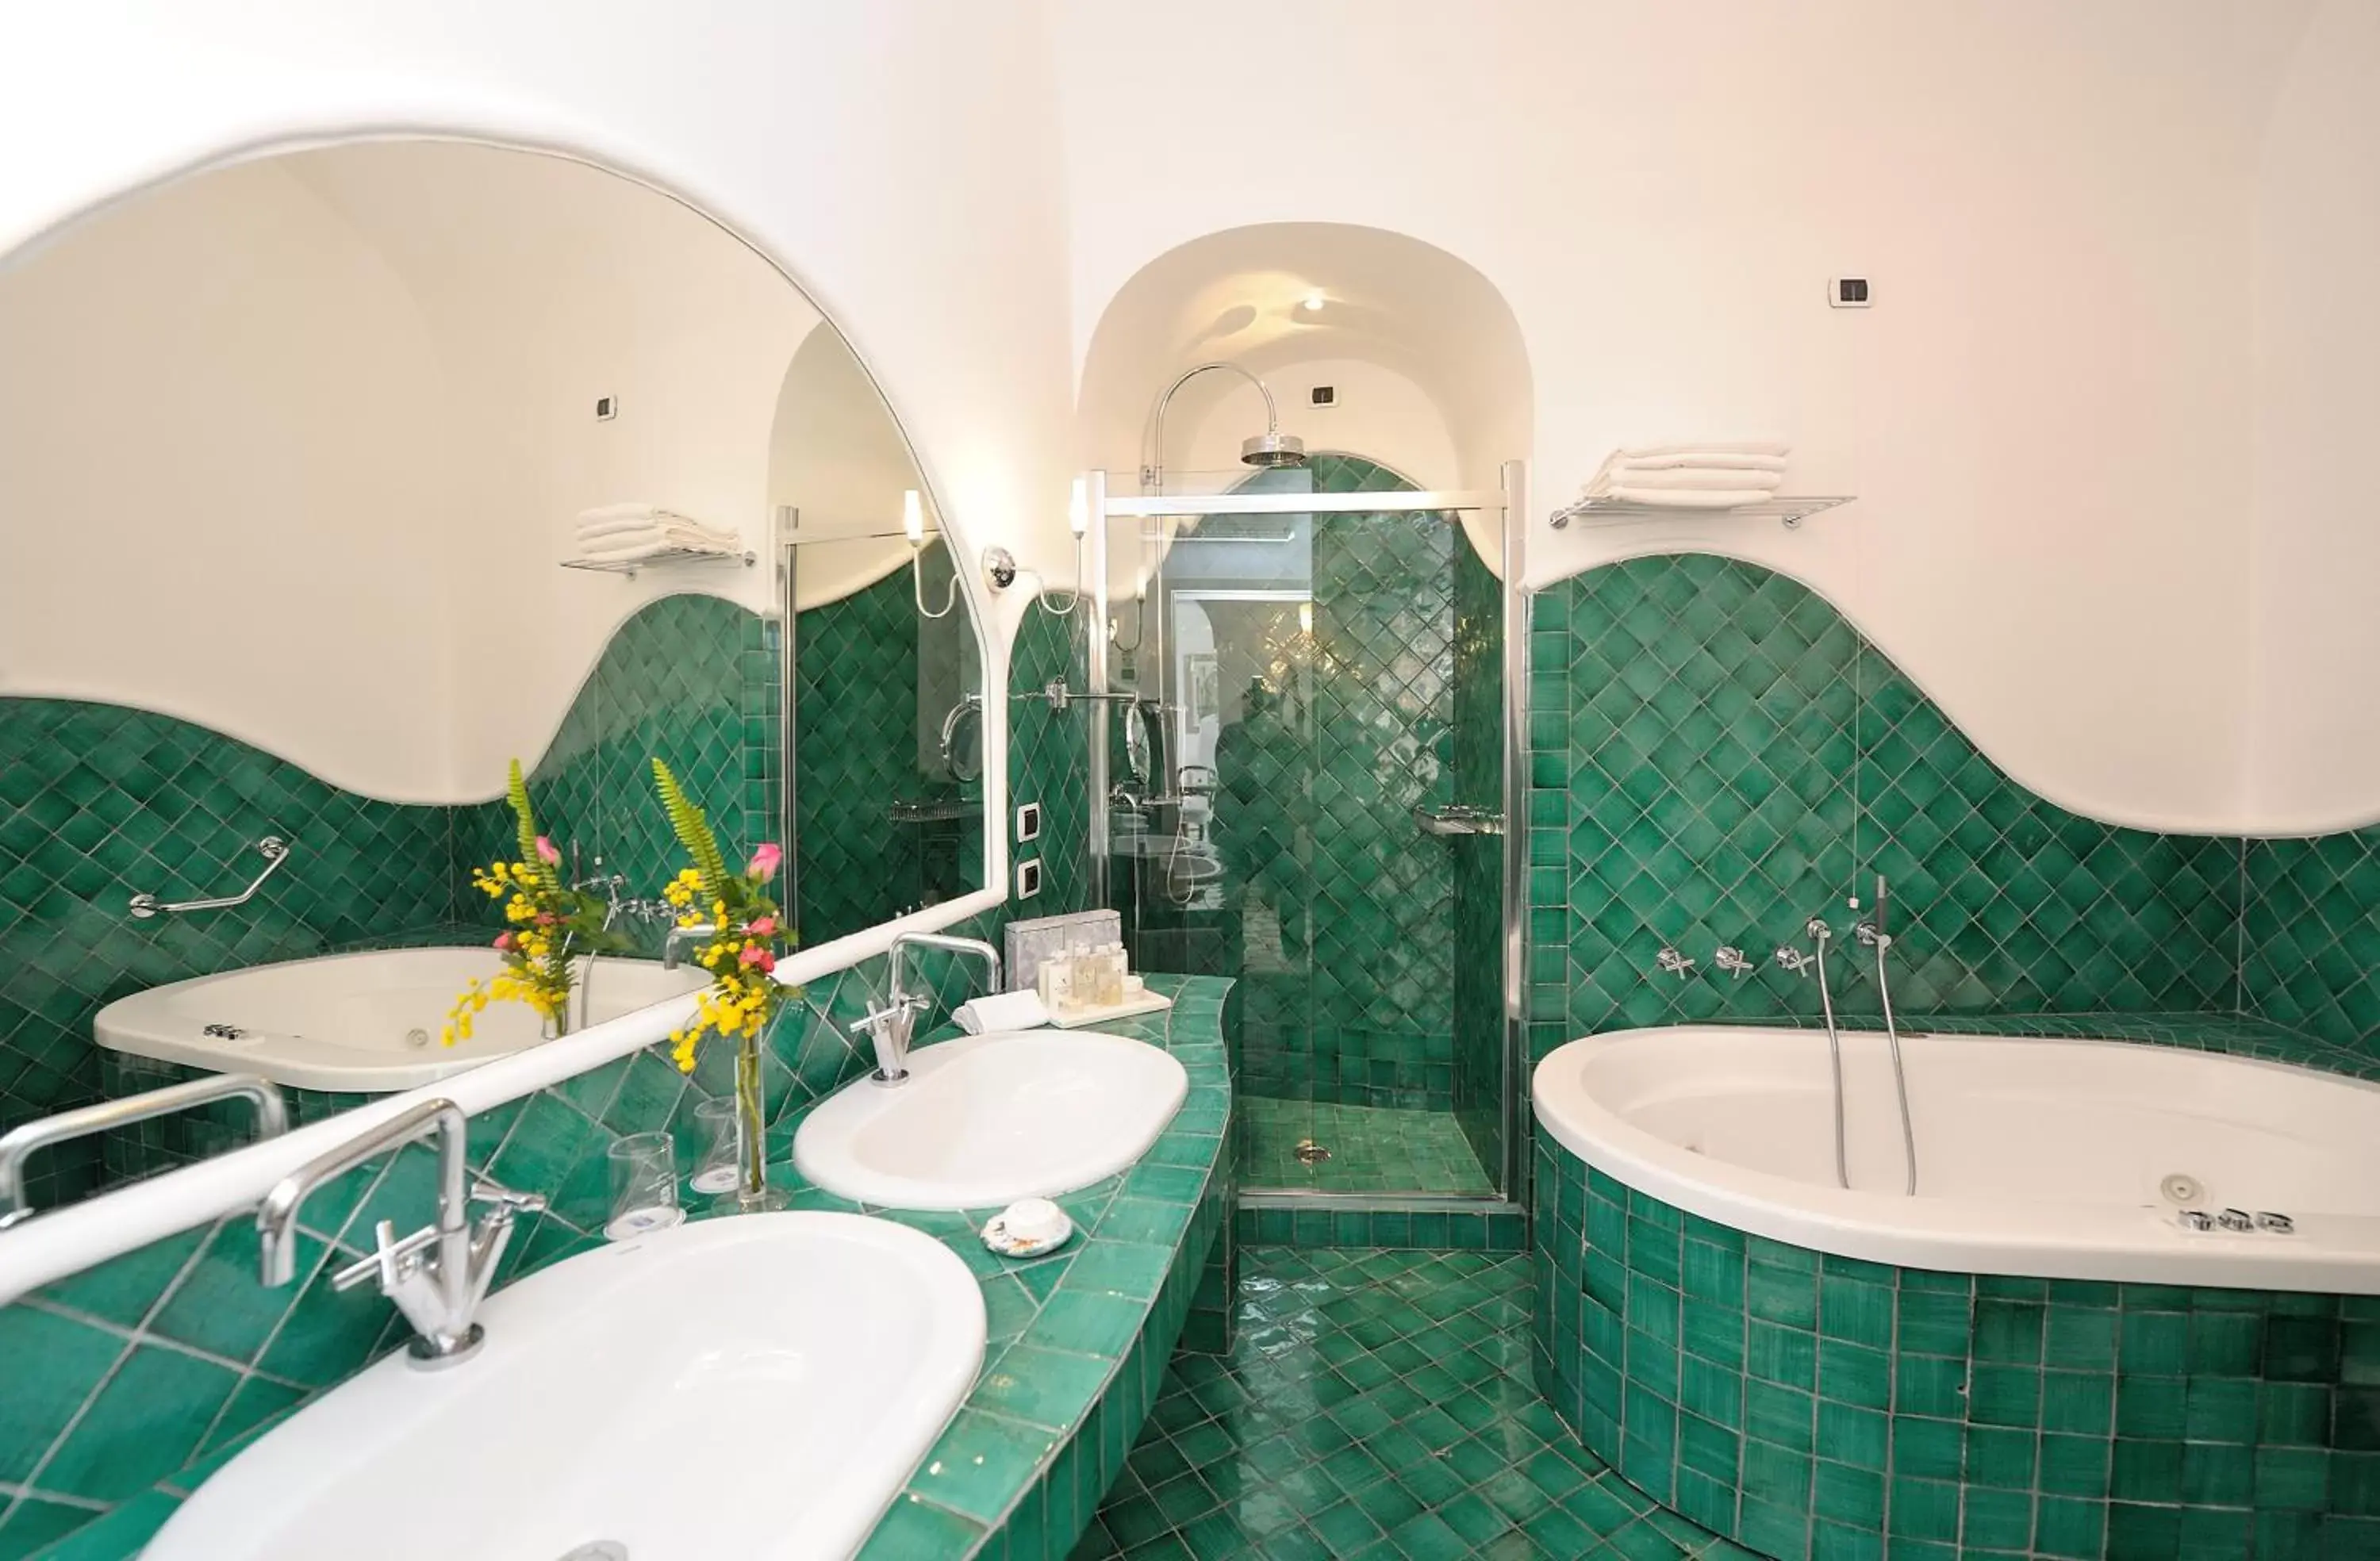 Bathroom in Hotel Santa Caterina